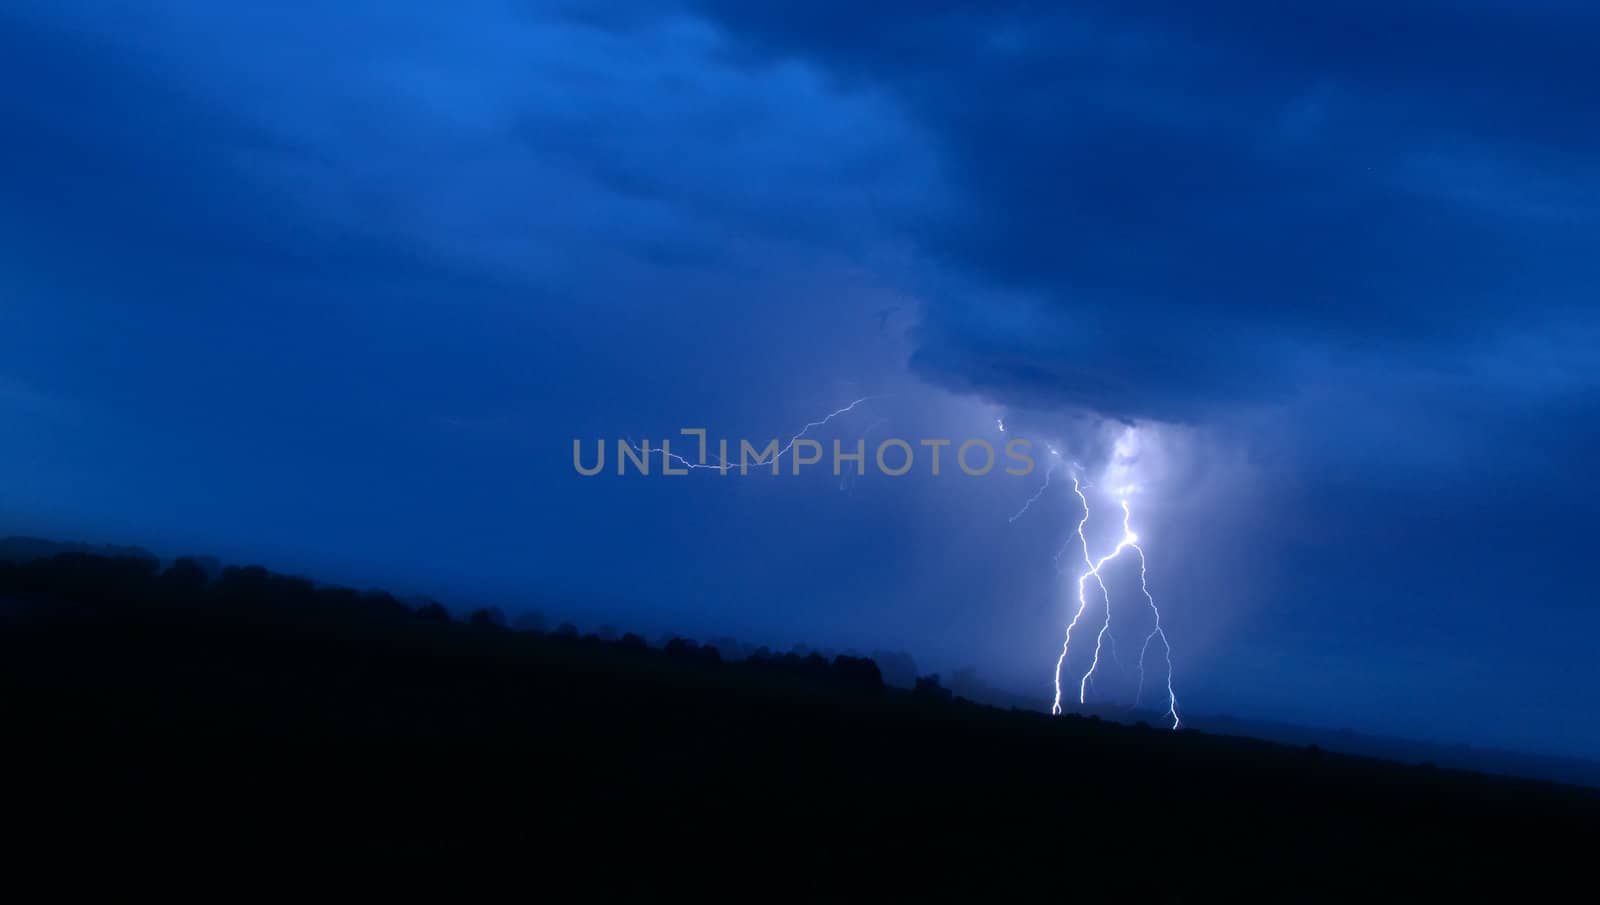 Great lightning in blue sky by kvinoz